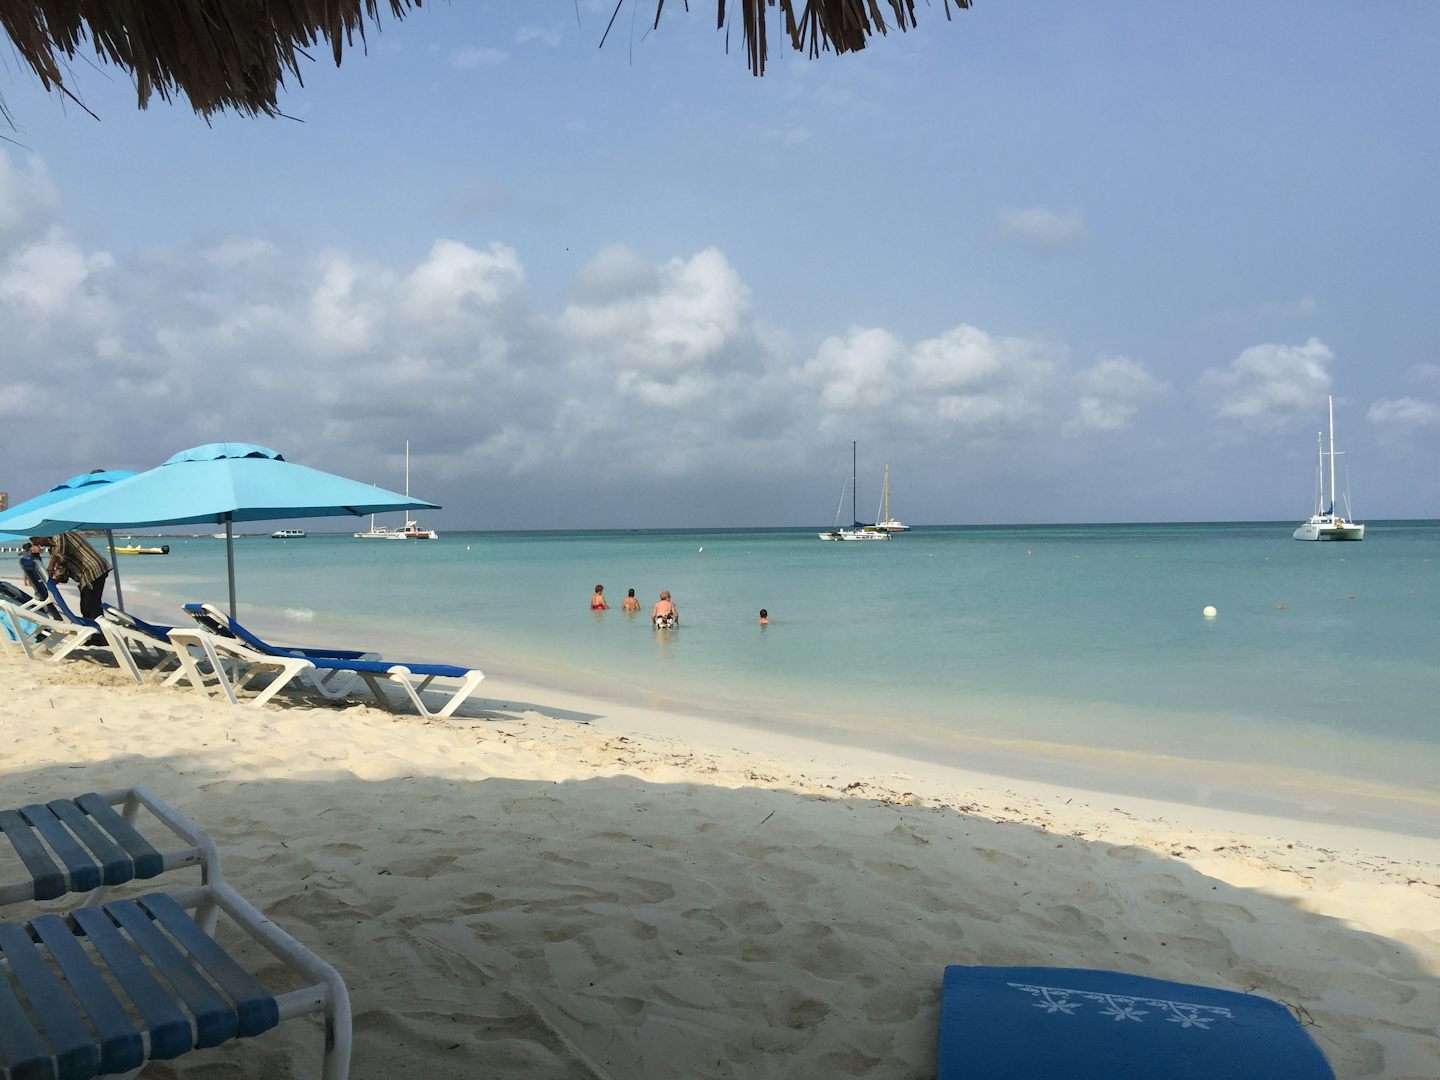 Aruba beach. We paid $10 per person per place to sit/laydown and $10 additi